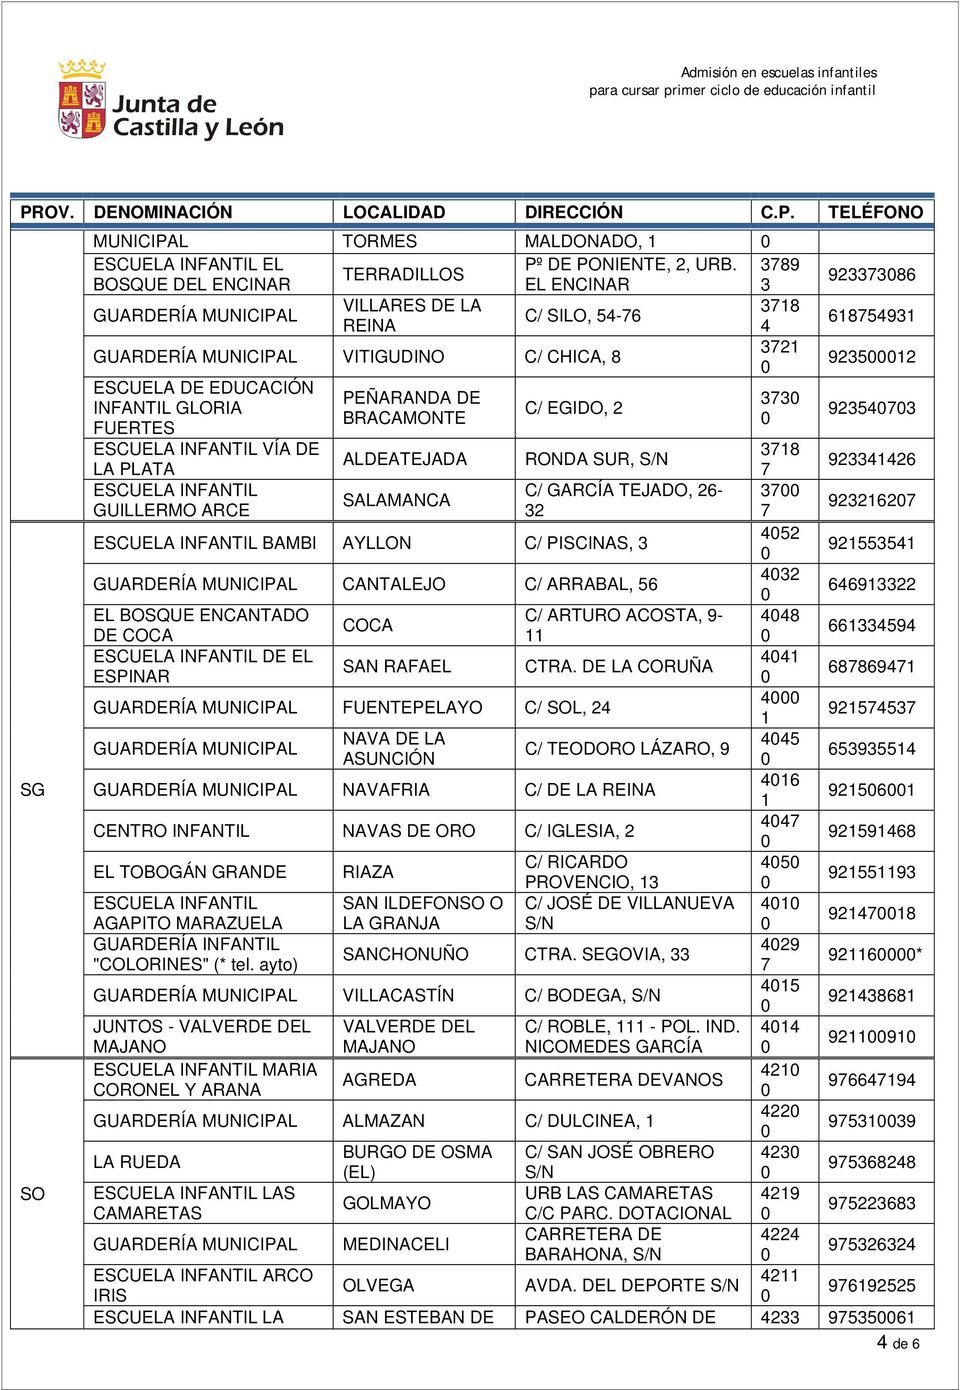 C/ GARCÍA TEJADO, 6- GUILLERMO ARCE 6 BAMBI AYLLON C/ PISCINAS, CANTALEJO C/ ARRABAL, 6 66 EL BOSQUE ENCANTADO C/ ARTURO ACOSTA, - COCA DE COCA 66 DE EL SAN RAFAEL CTRA.